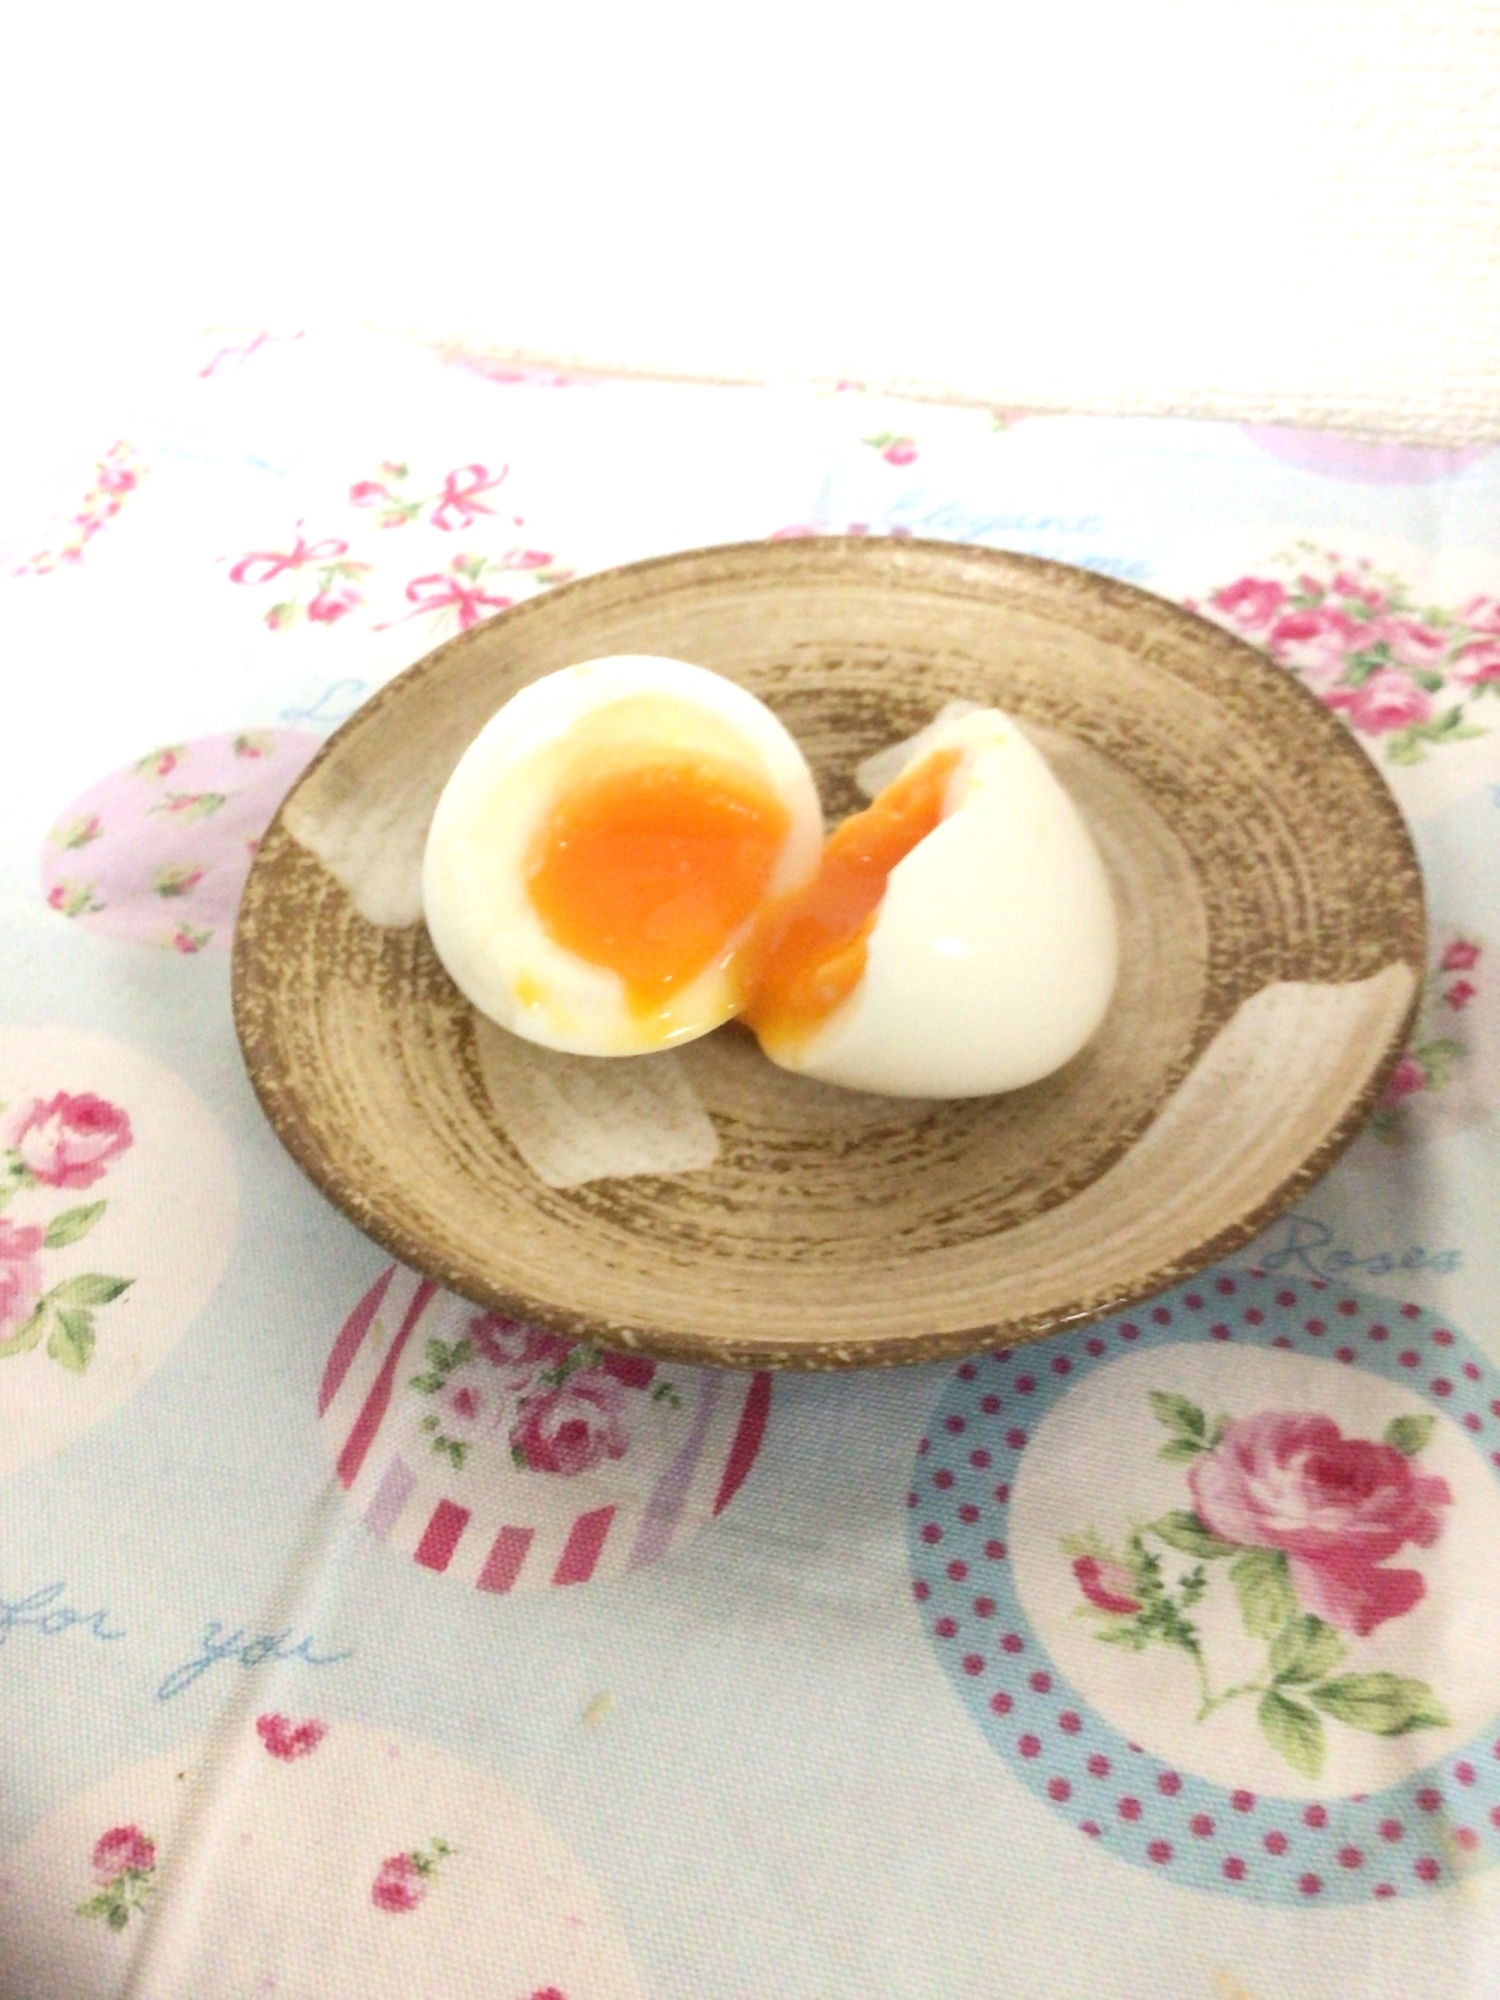 超半熟❗️殻がむきやすいゆで卵